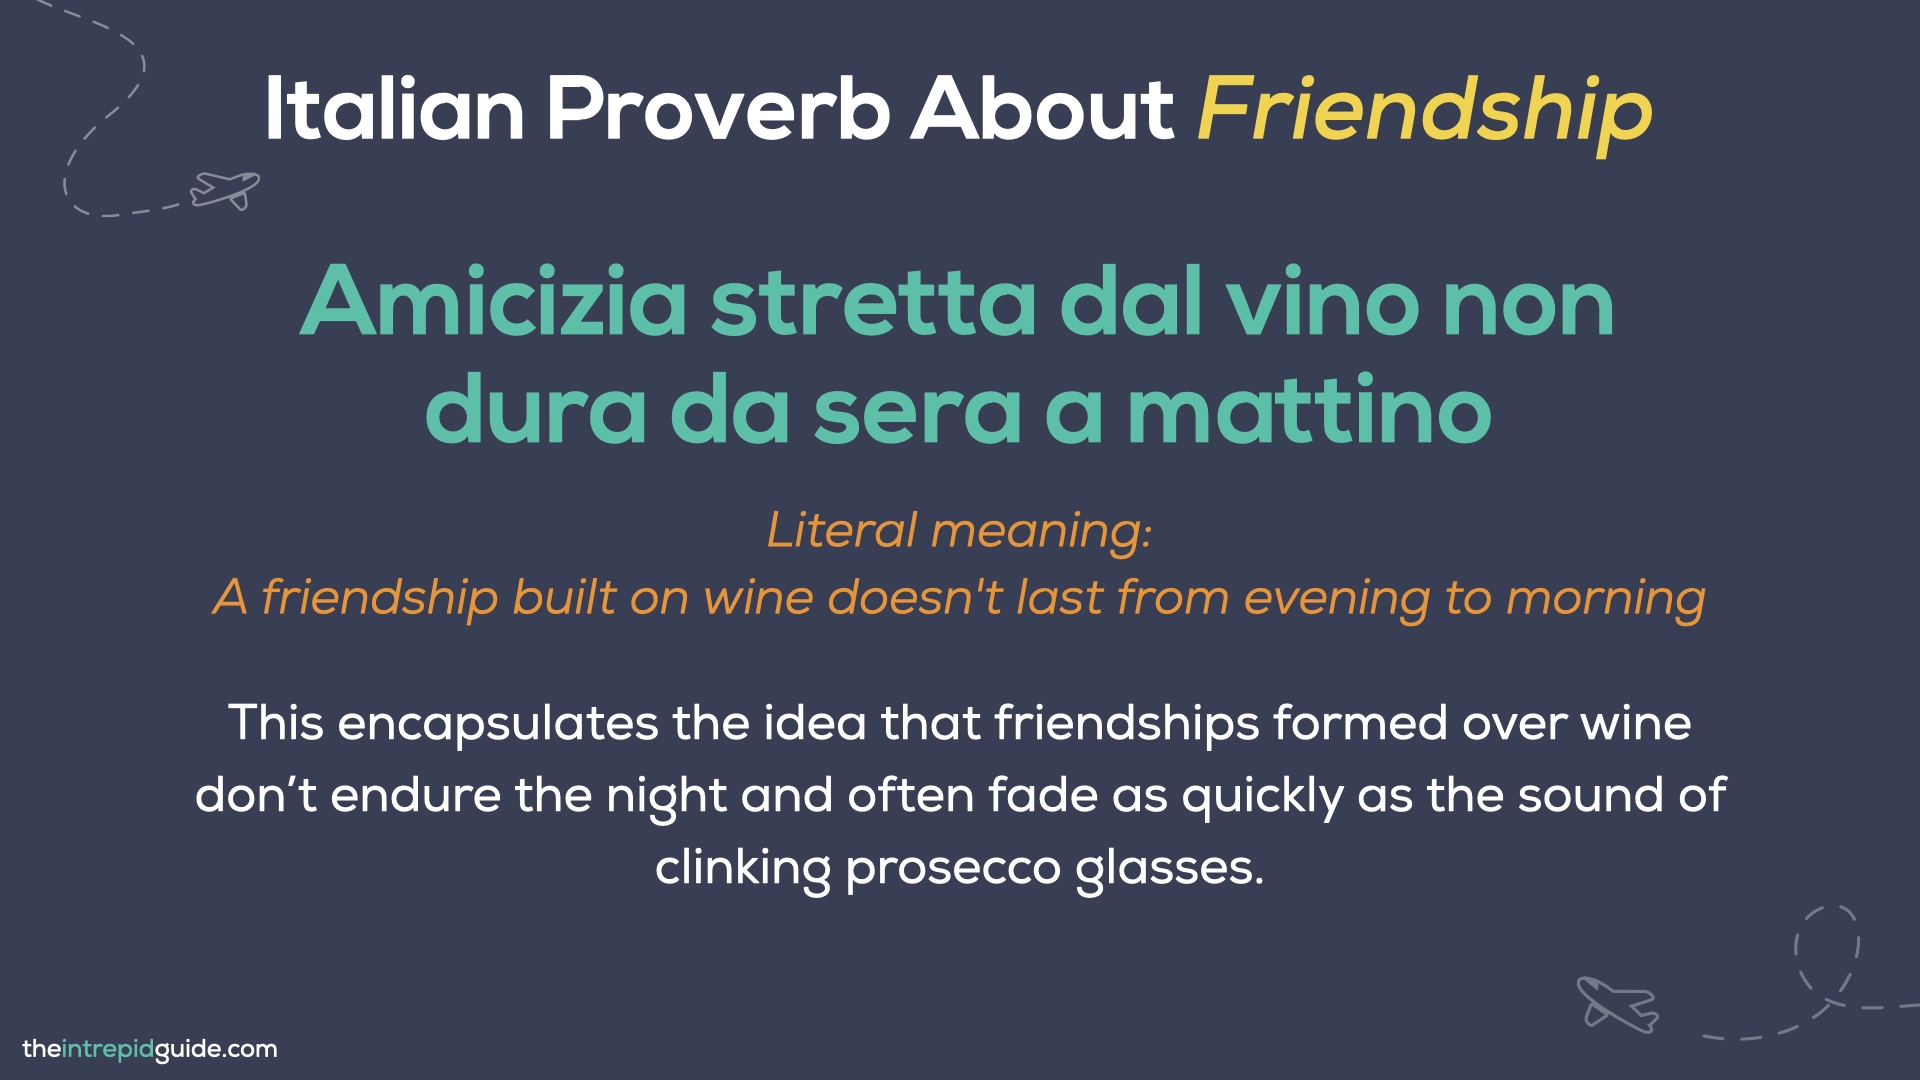 Italian Proverbs - Amicizia stretta dal vino non dura da sera a mattino